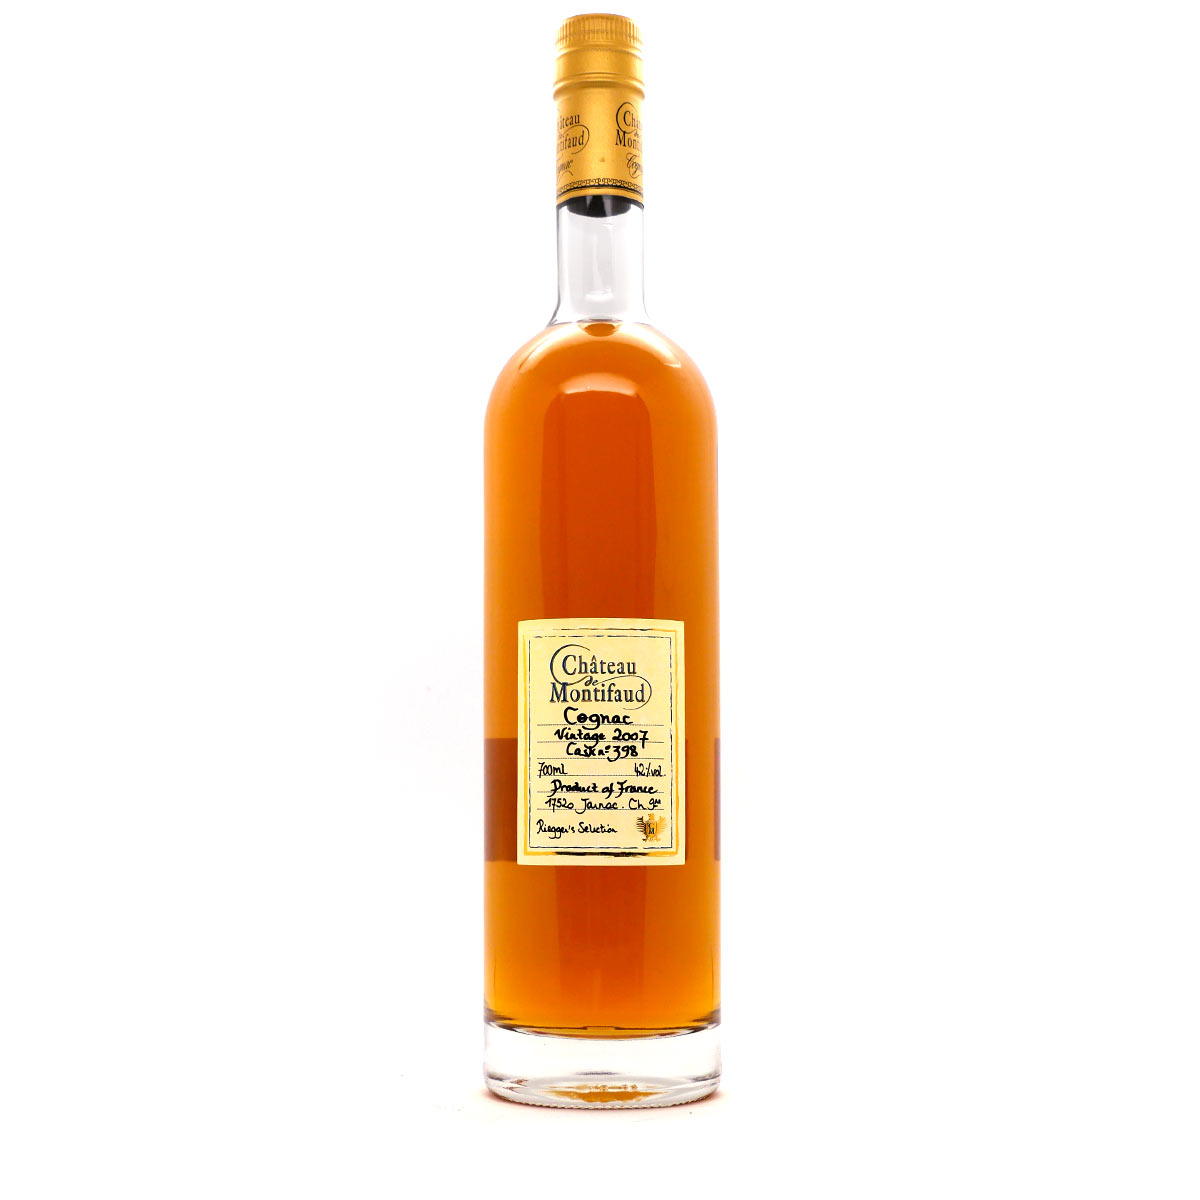 Montifaud | Vintage 2007 Cognac - Riegger's Selection